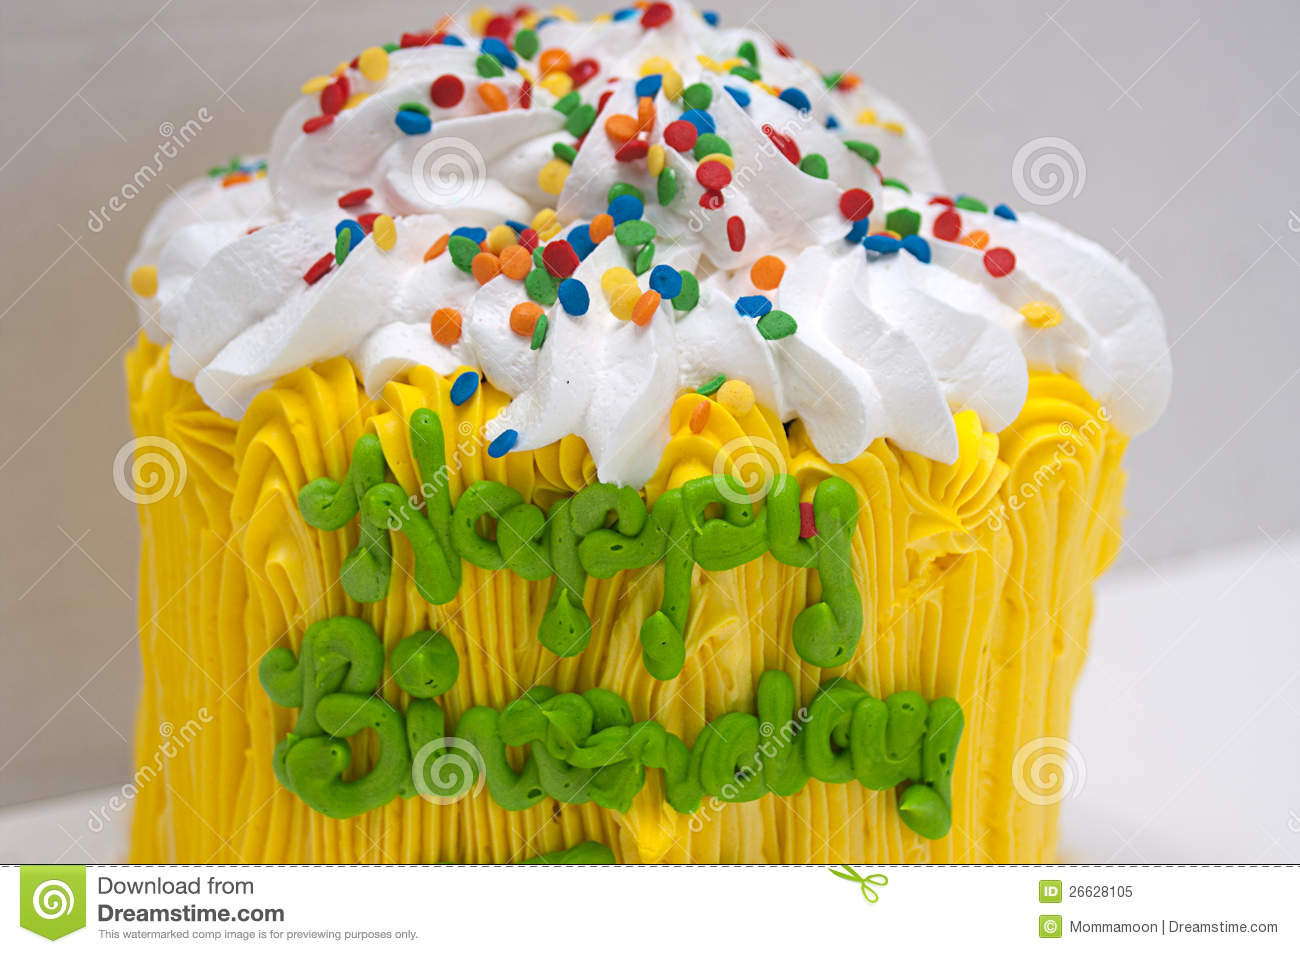 Geburtstagswünsche Kuchen
 Zum Geburtstag Kuchen Geburtstagskuchen